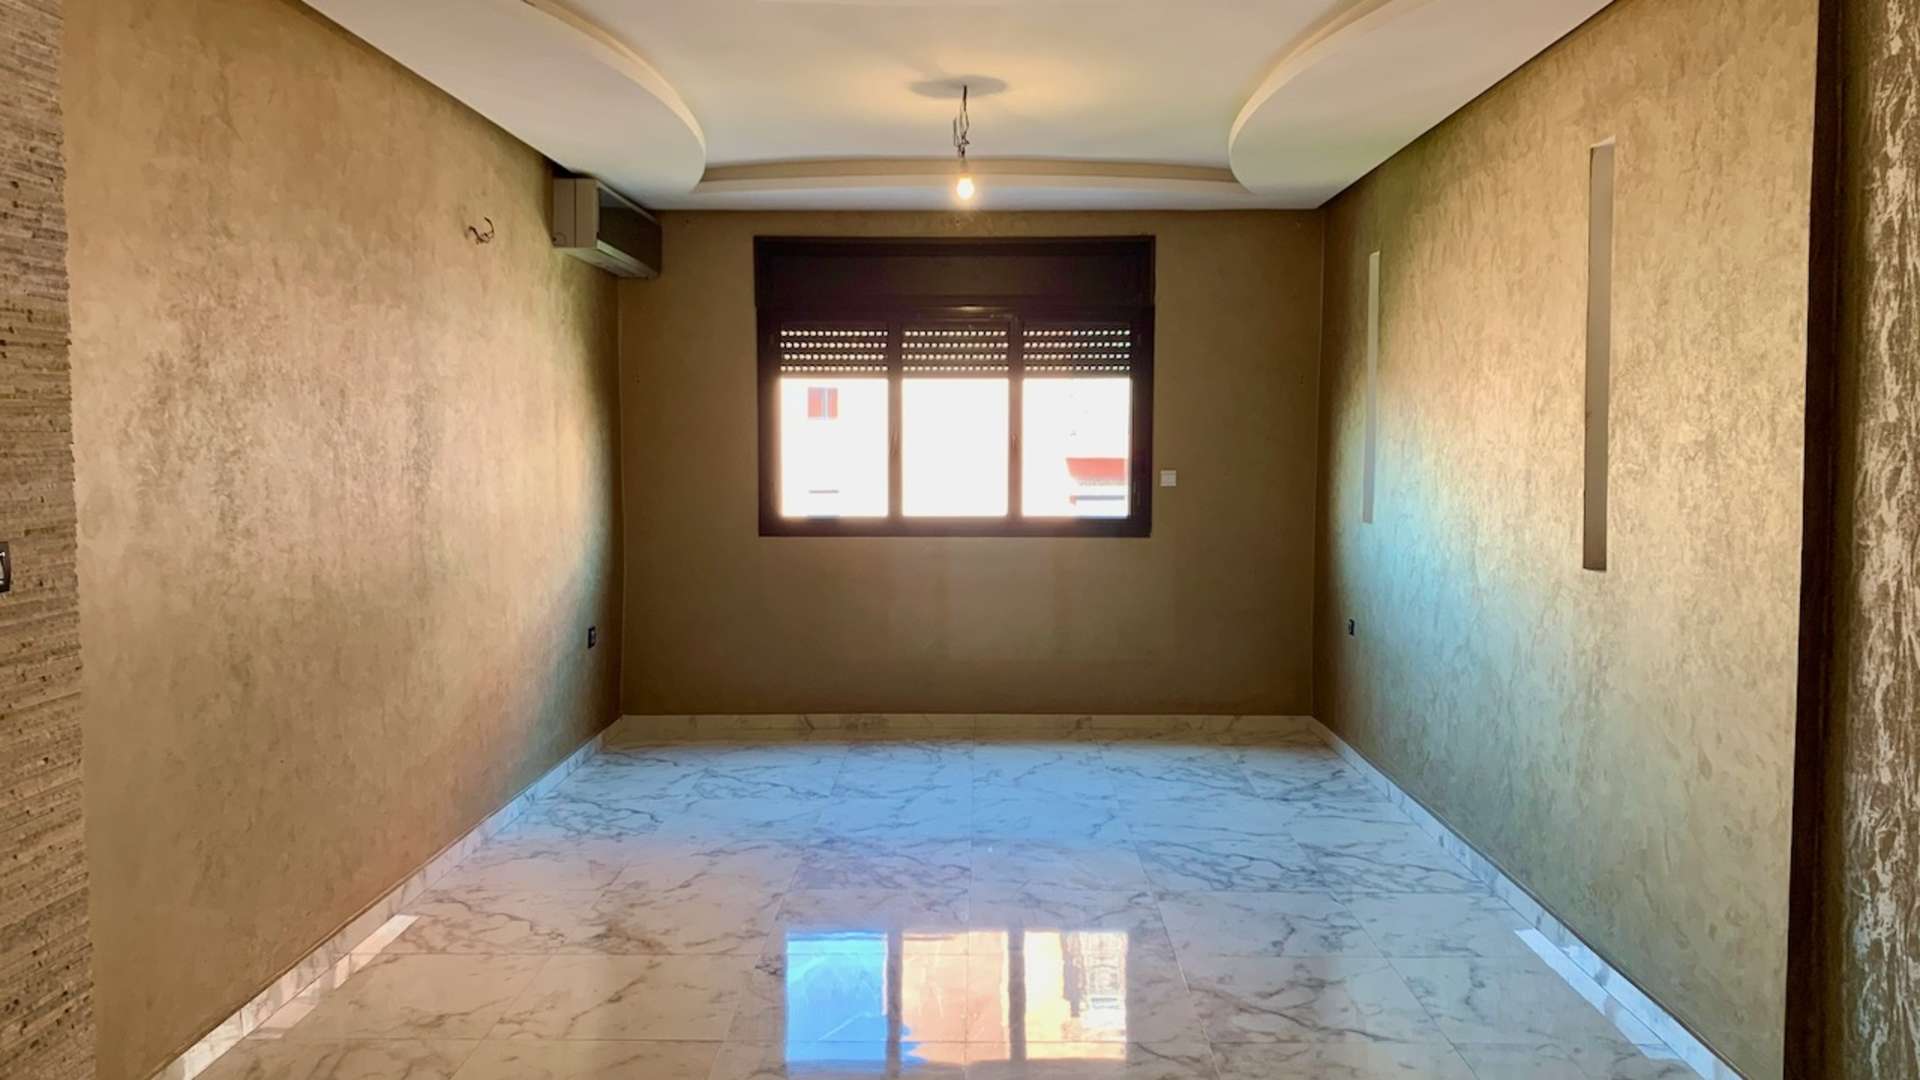 Vente,Appartement,Superbe appartement à vendre à Guéliz. Surface totale 100.0 m². Système de parabole et résidence sécurisée,Marrakech,Guéliz